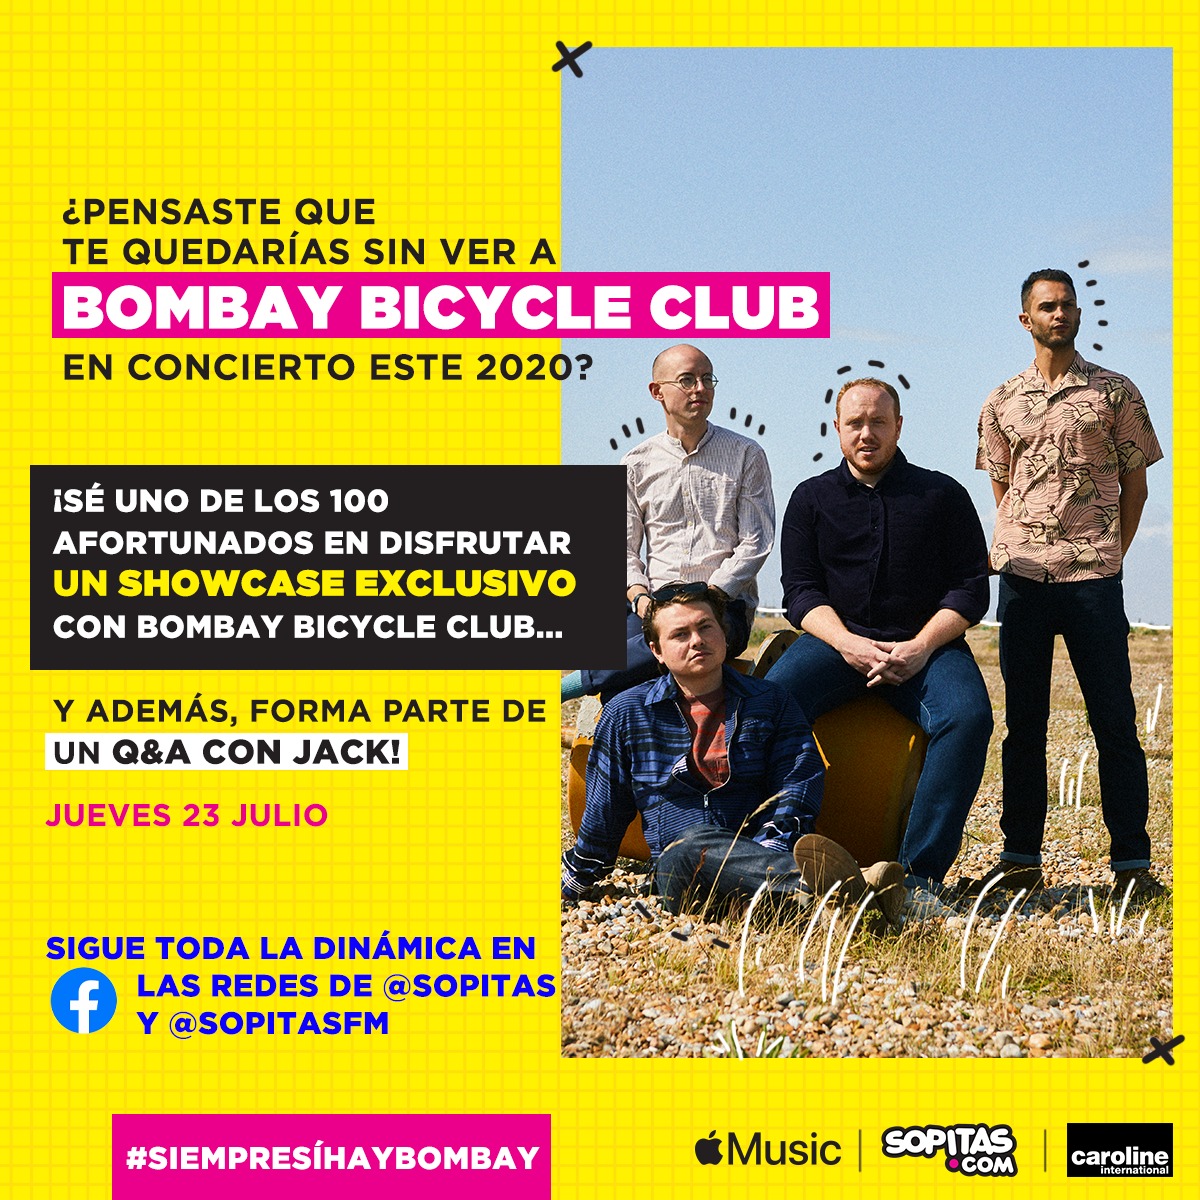 ¡SOPITAS.COM TE INVITA A UN SHOW EXCLUSIVO CON BOMBAY BICYCLE CLUB CON TODO Y Q&A!